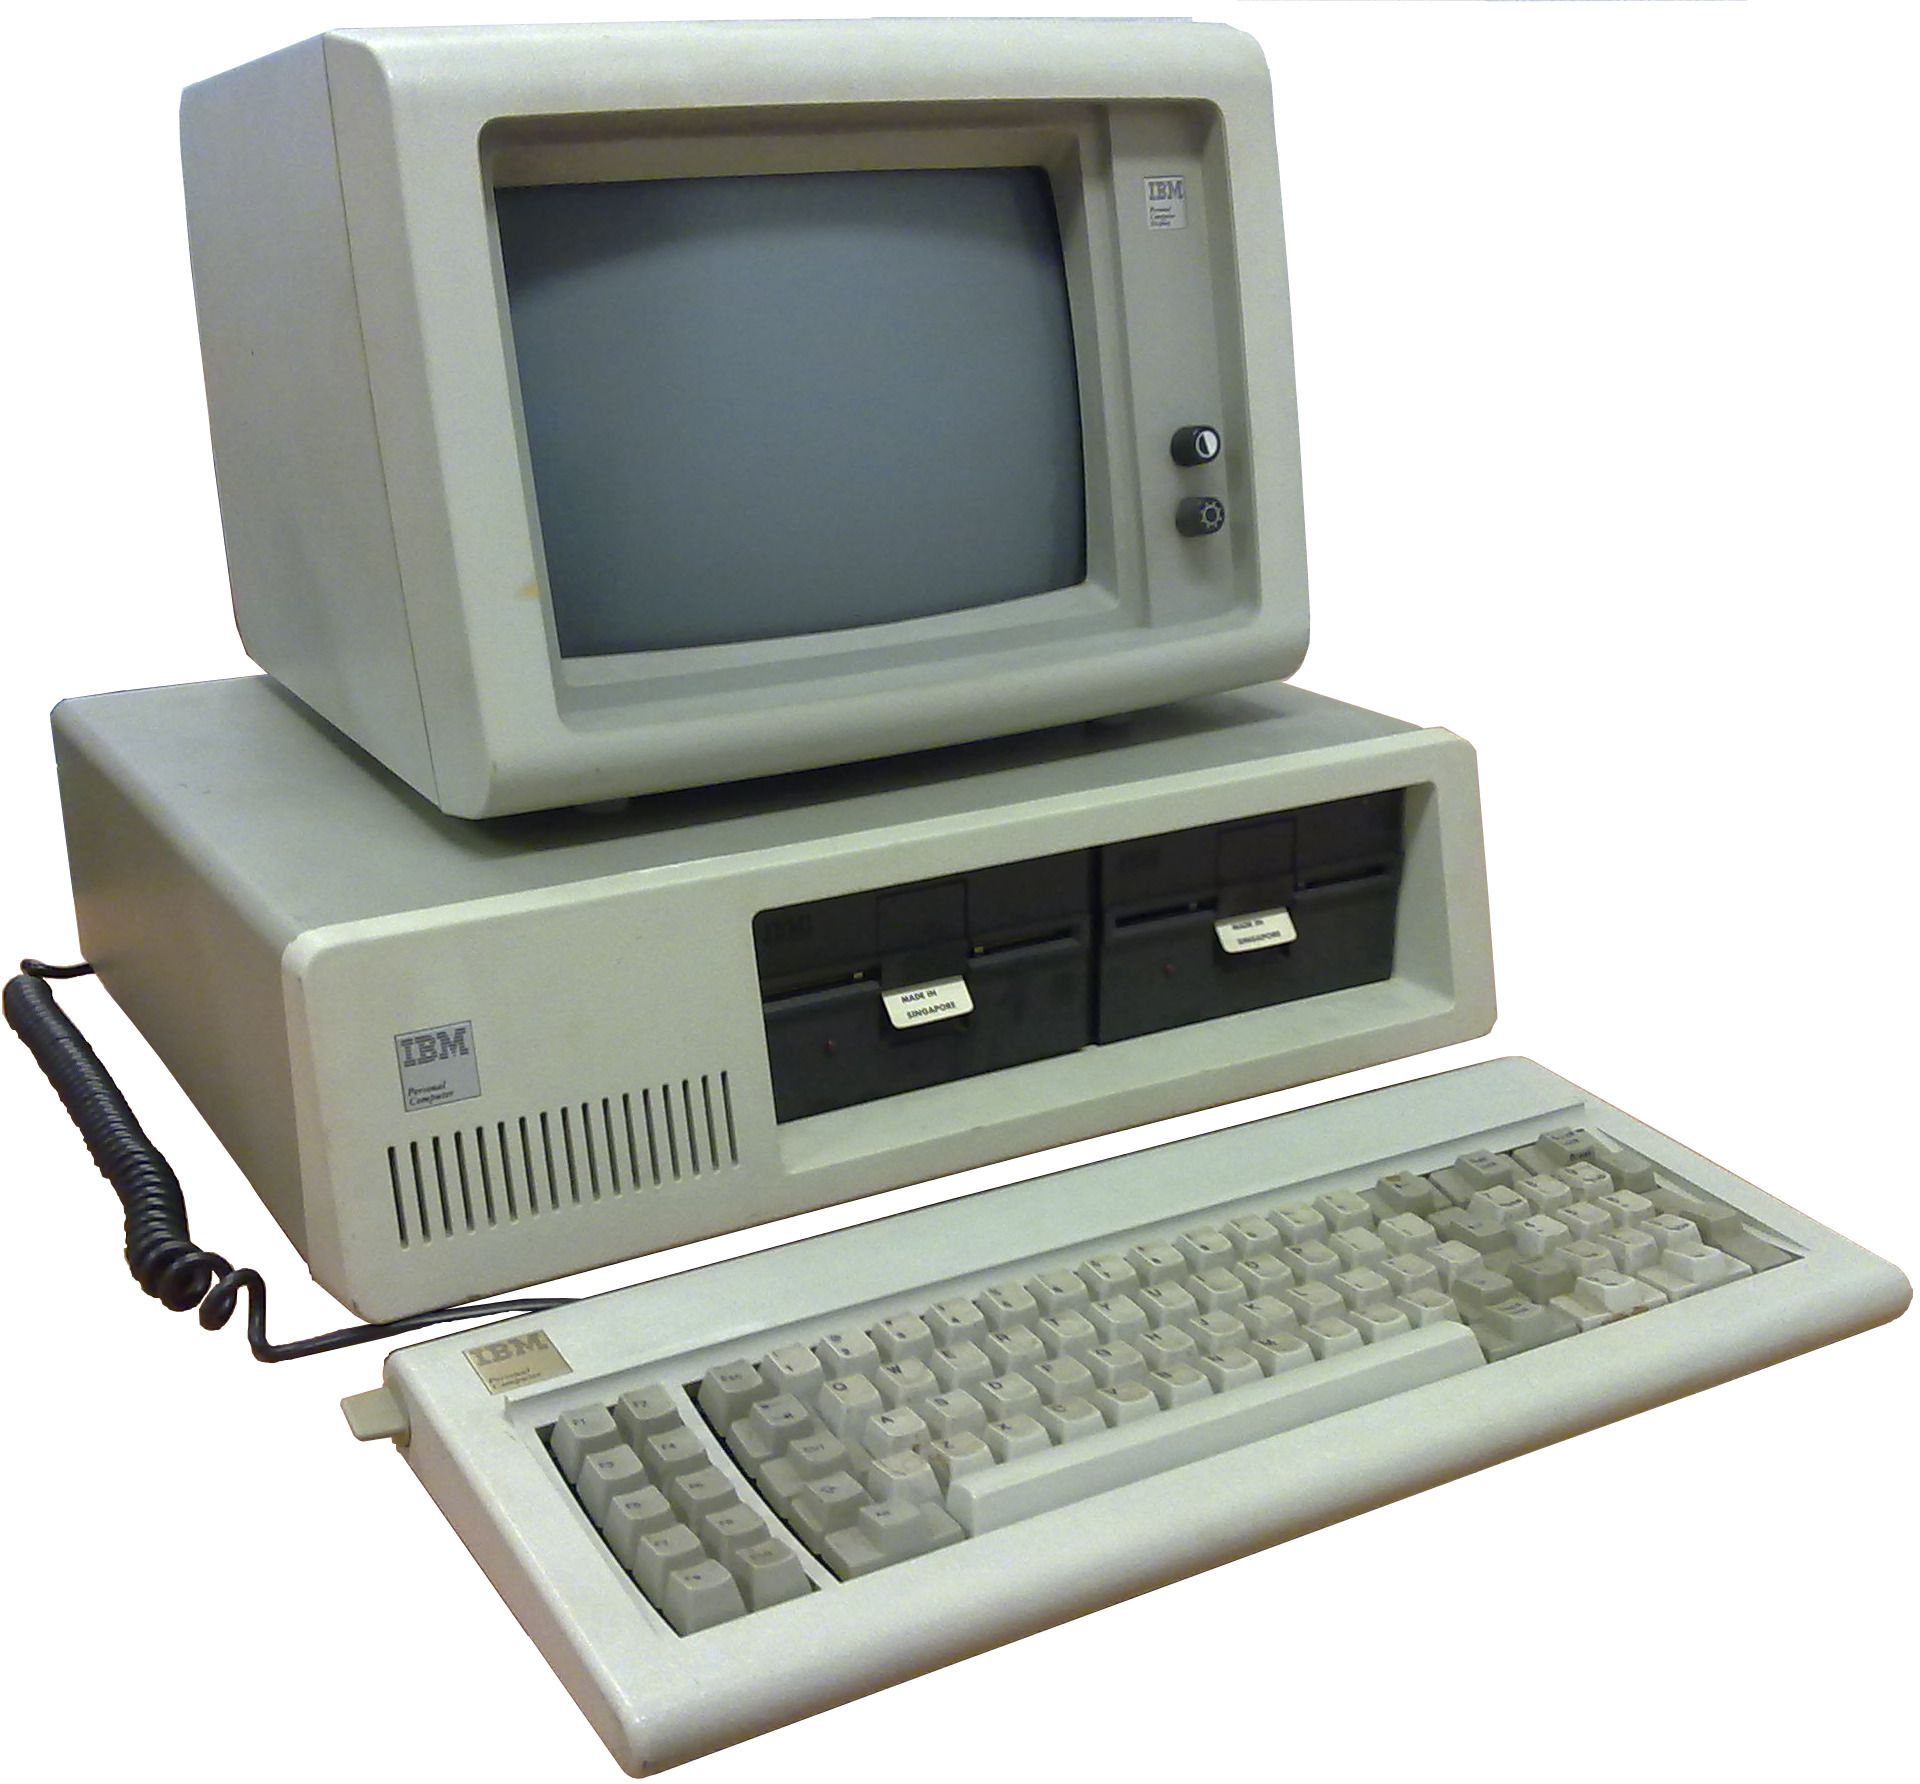 38 aniversario del PC que cambió la informática